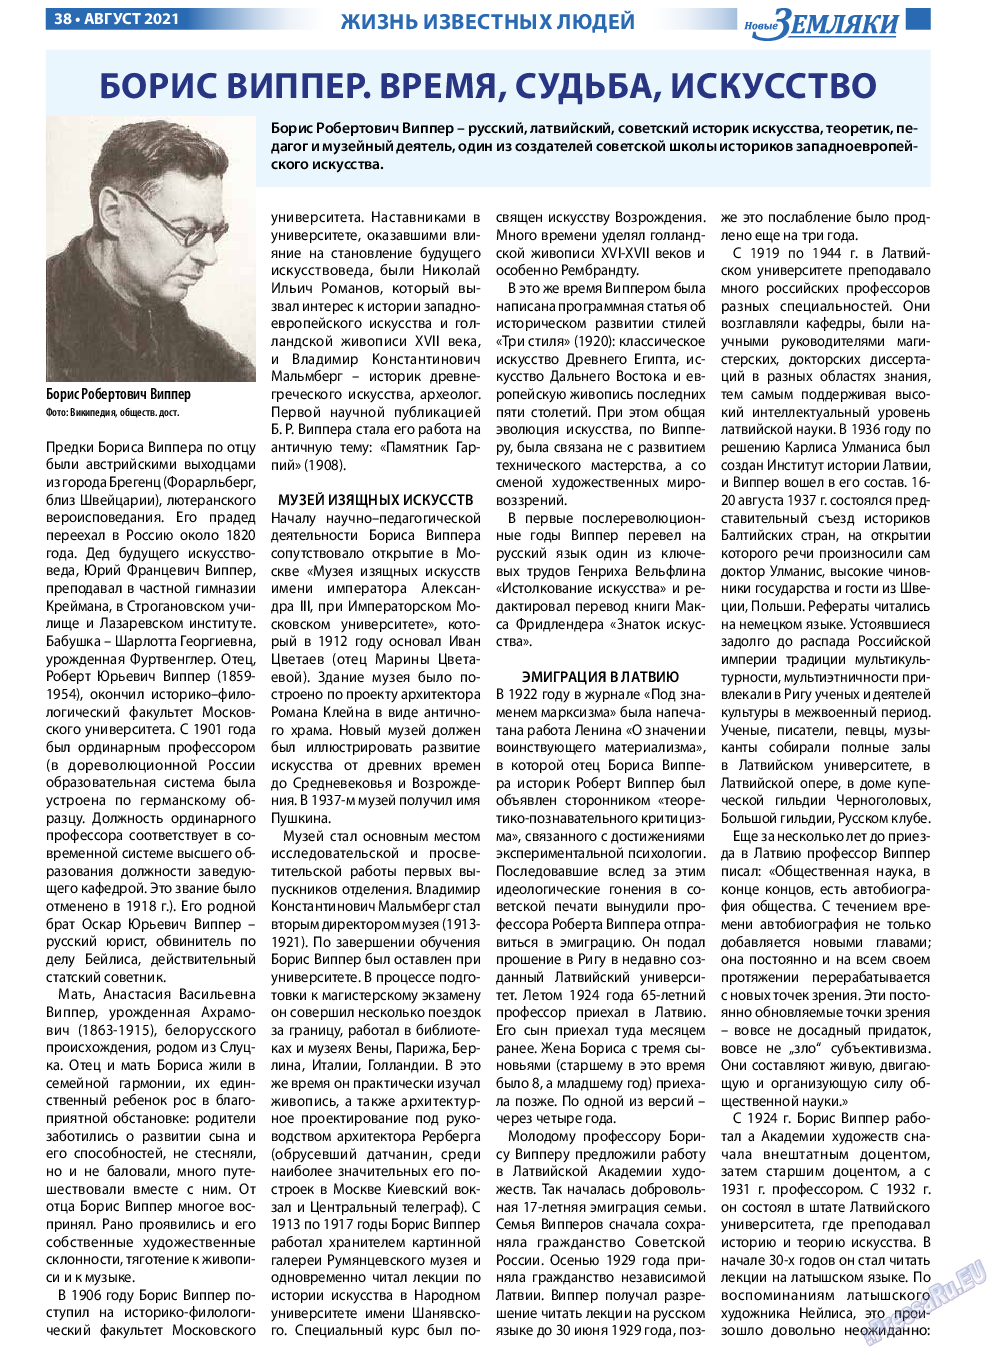 Новые Земляки, газета. 2021 №8 стр.38